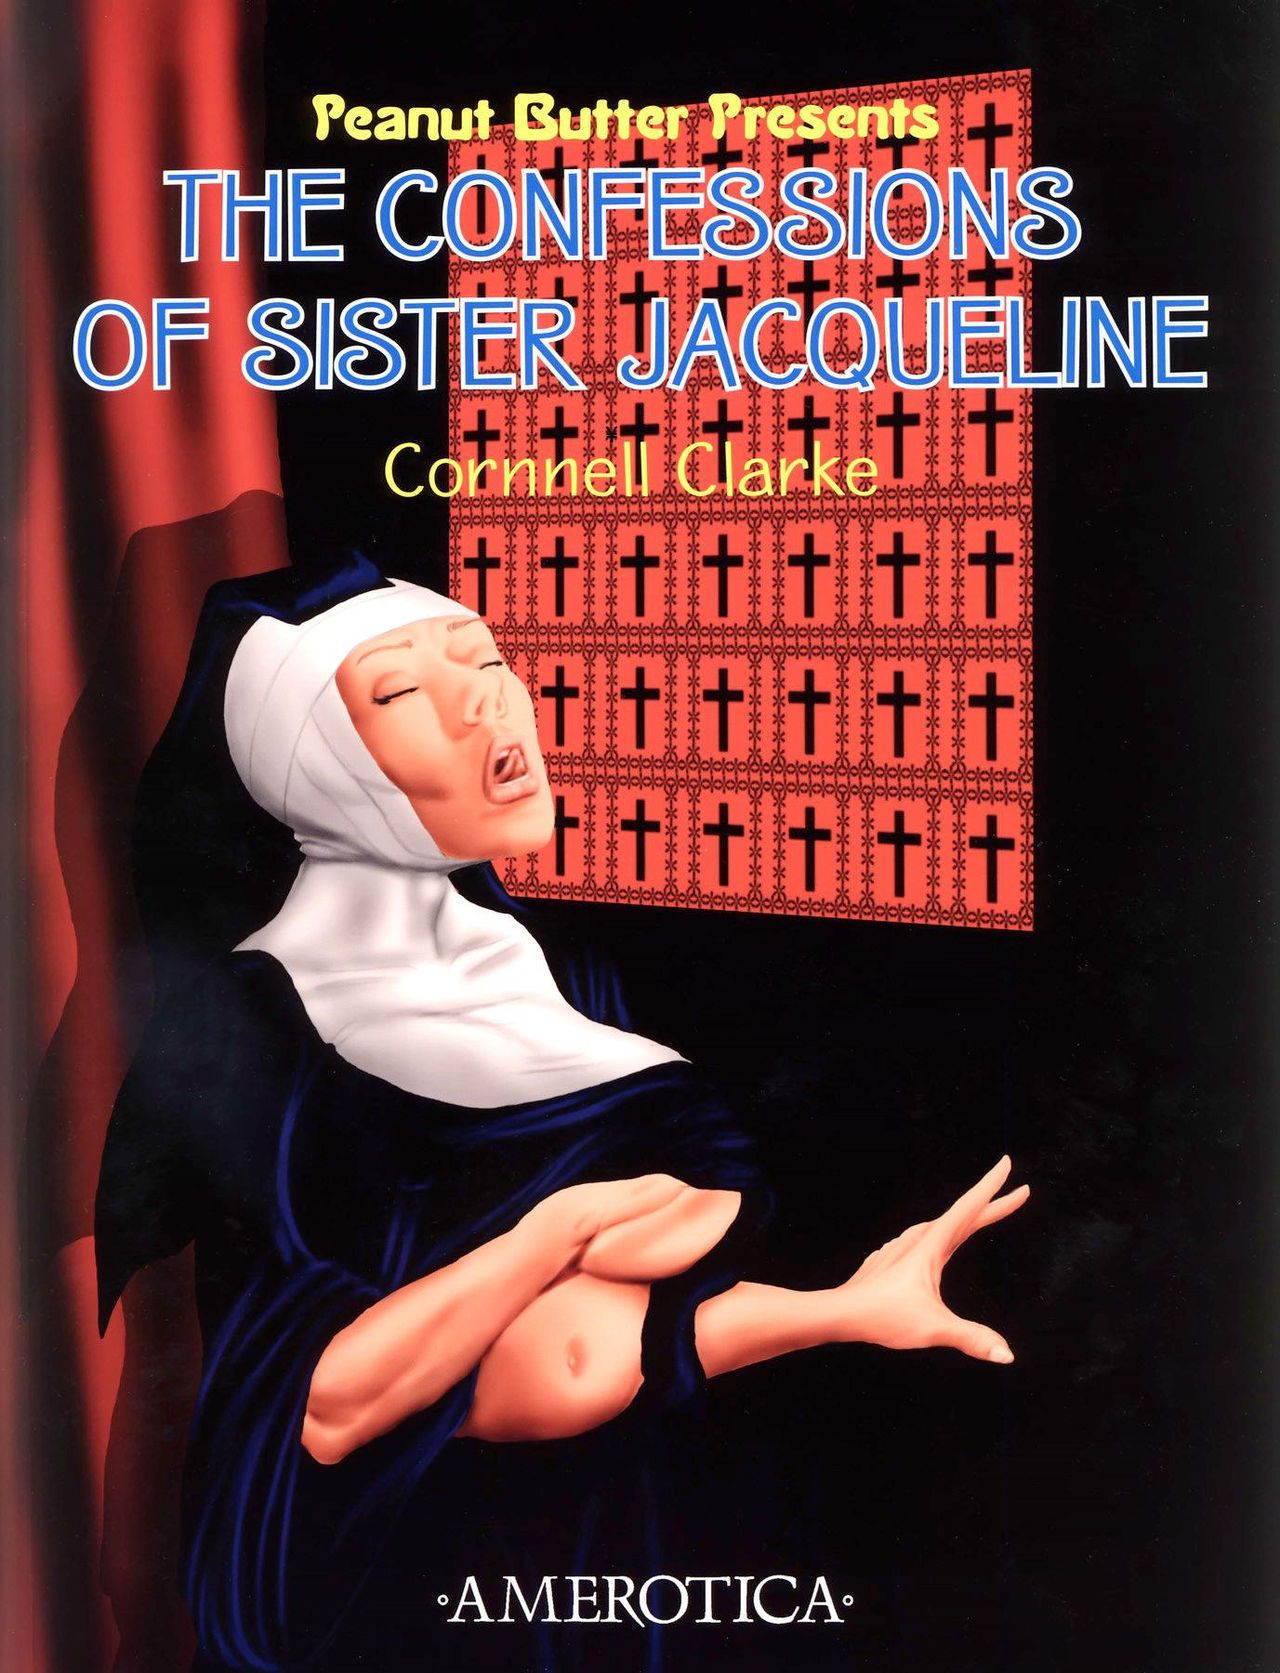 cornnell Clarke pinda butter: De confessisons van zuster jacqueline